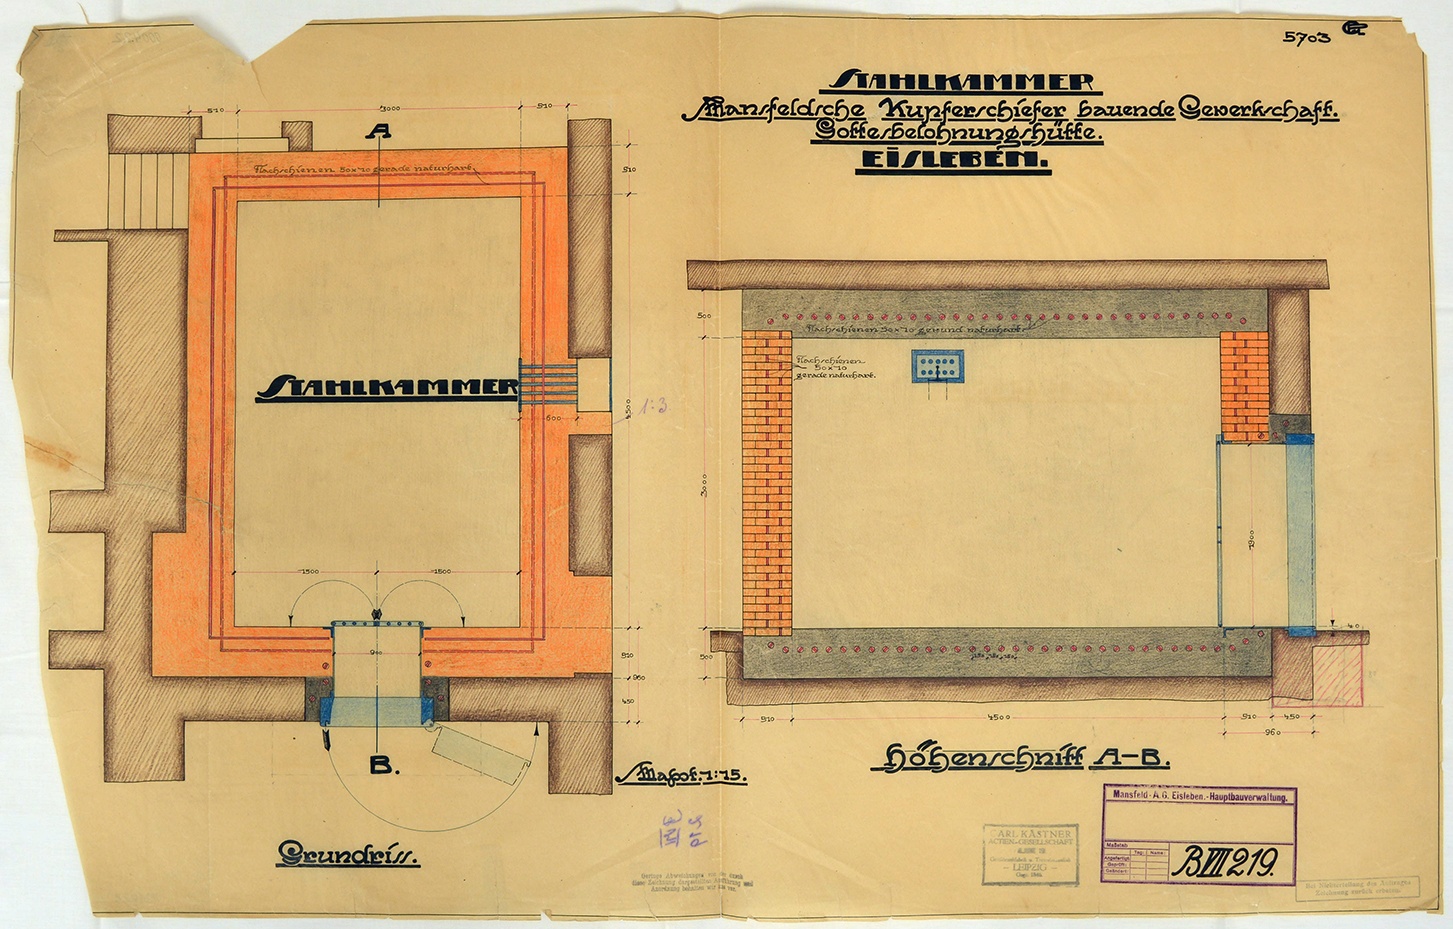 Stahlkammer Mansfeldsche Kupferschiefer bauende Gewerkschaft. Gottesbelohnungshütte. Eisleben. (Mansfeld-Museum im Humboldt-Schloss CC BY-NC-SA)